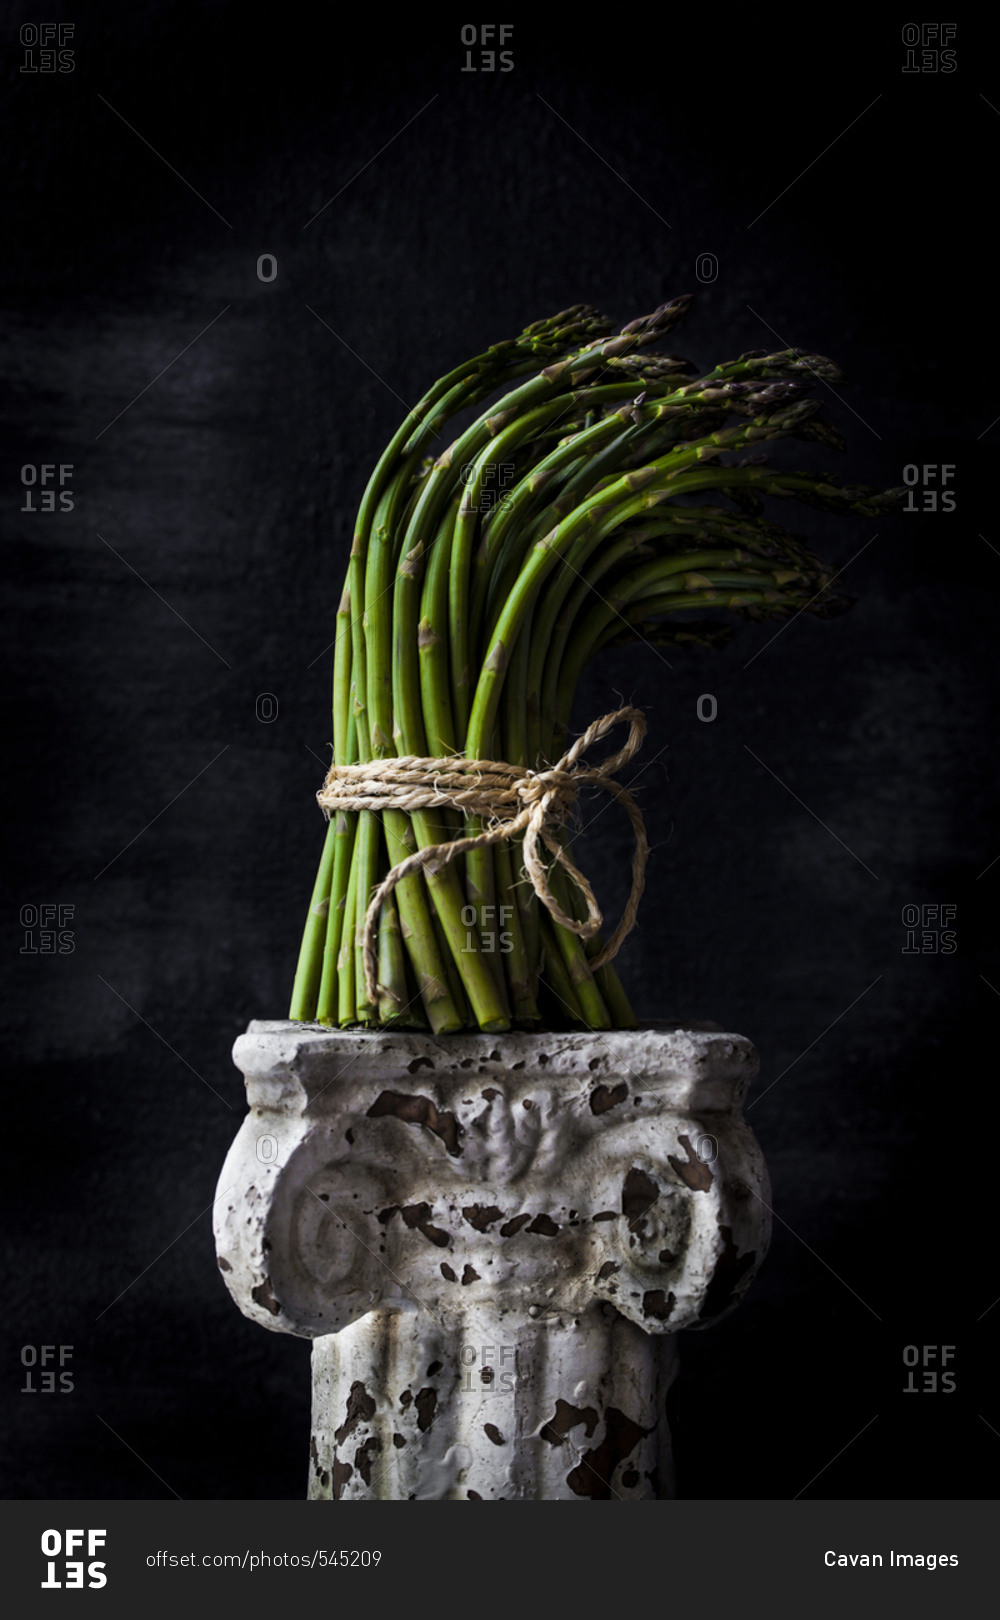 Bunch of asparagus on old pedestal against black background